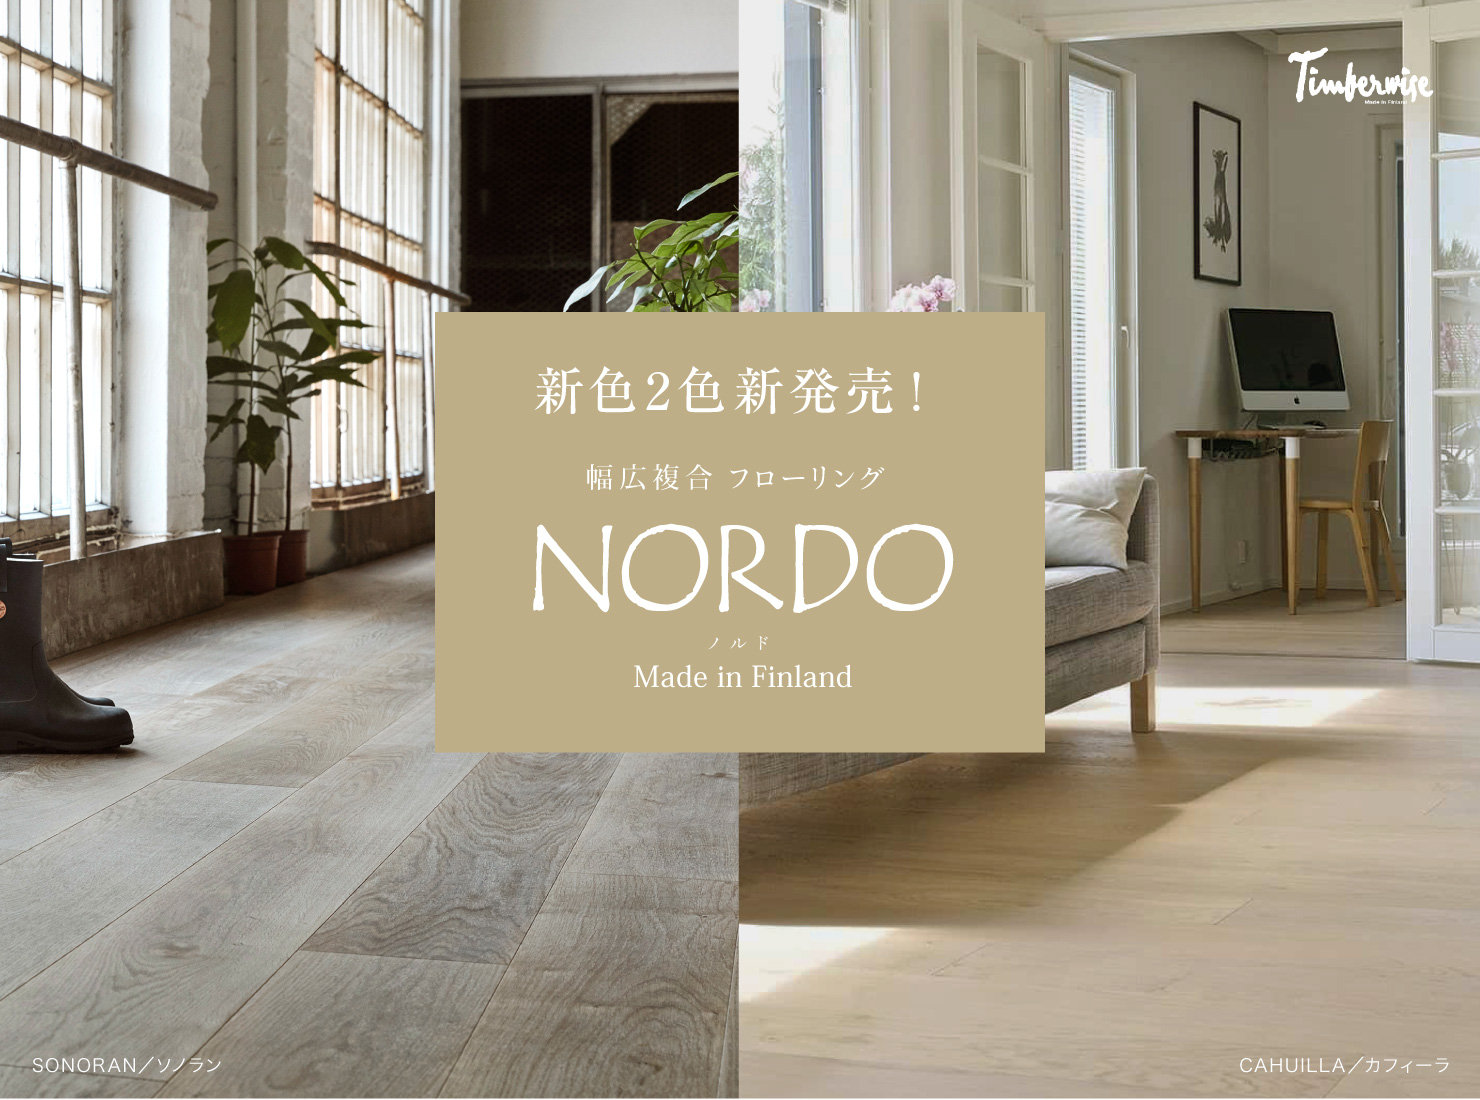 新色2色新発売！ 幅広複合フローリング NORDO ノルド Made in Finland